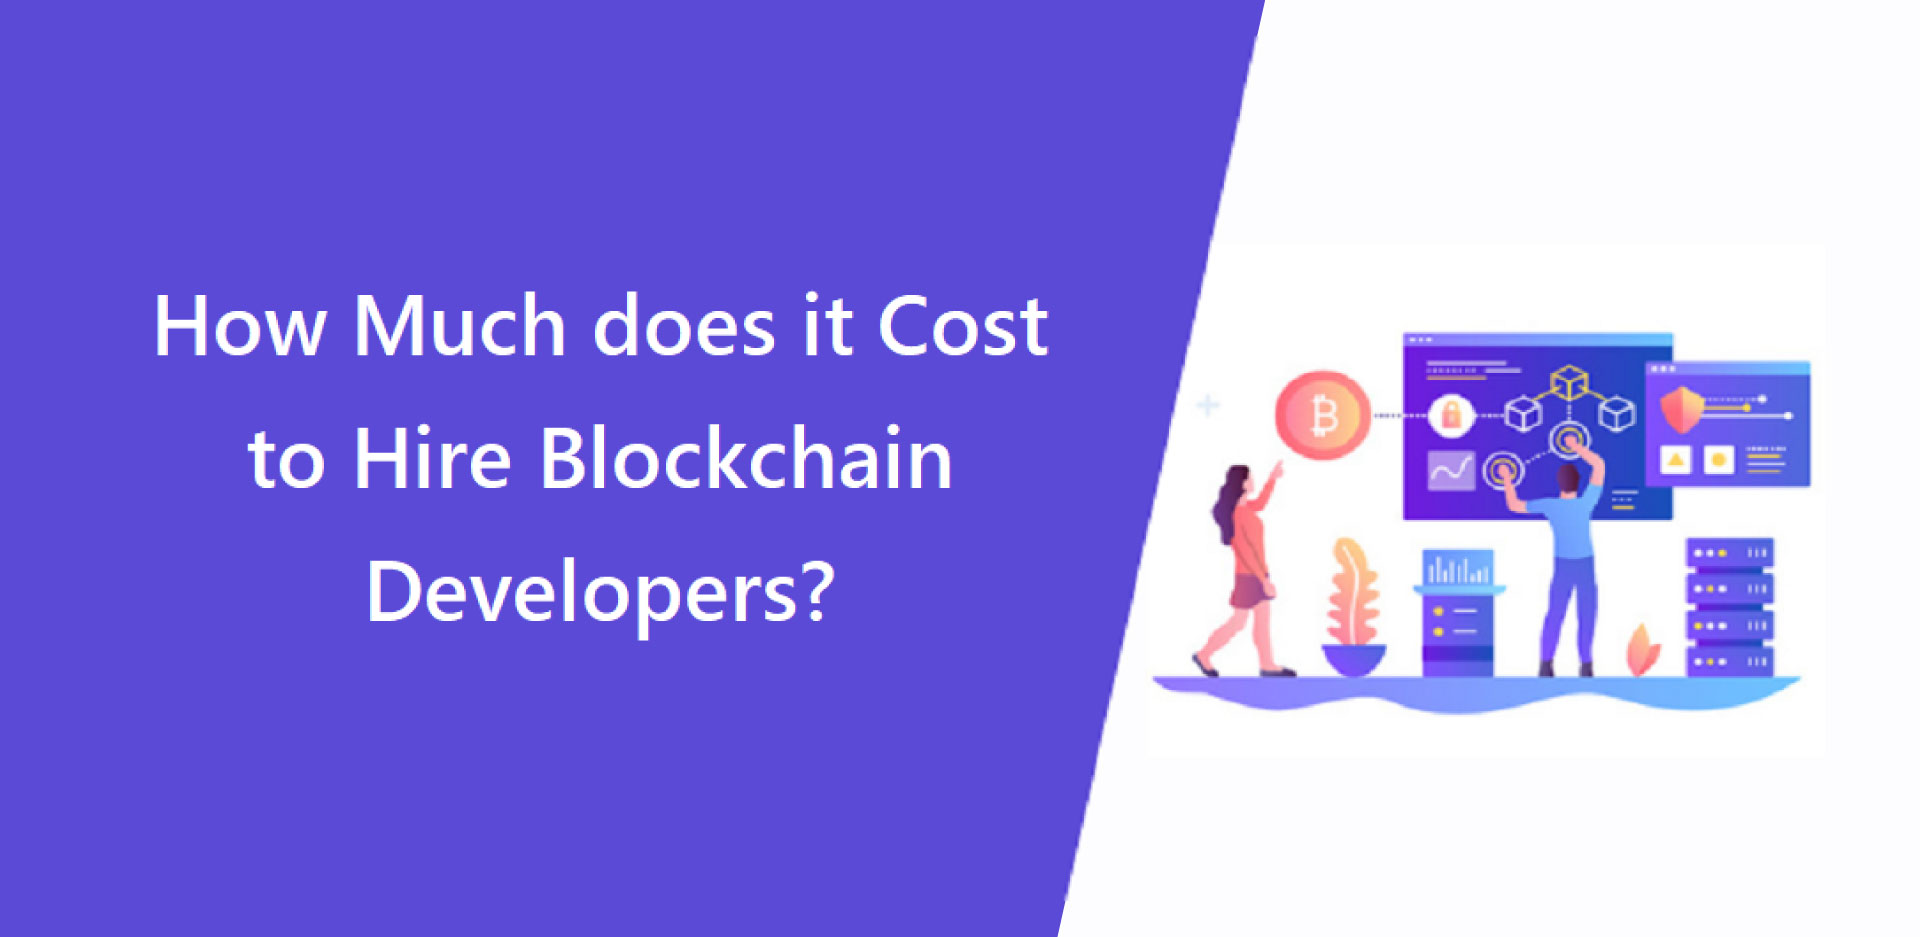 Cost to hire a blockchain developer